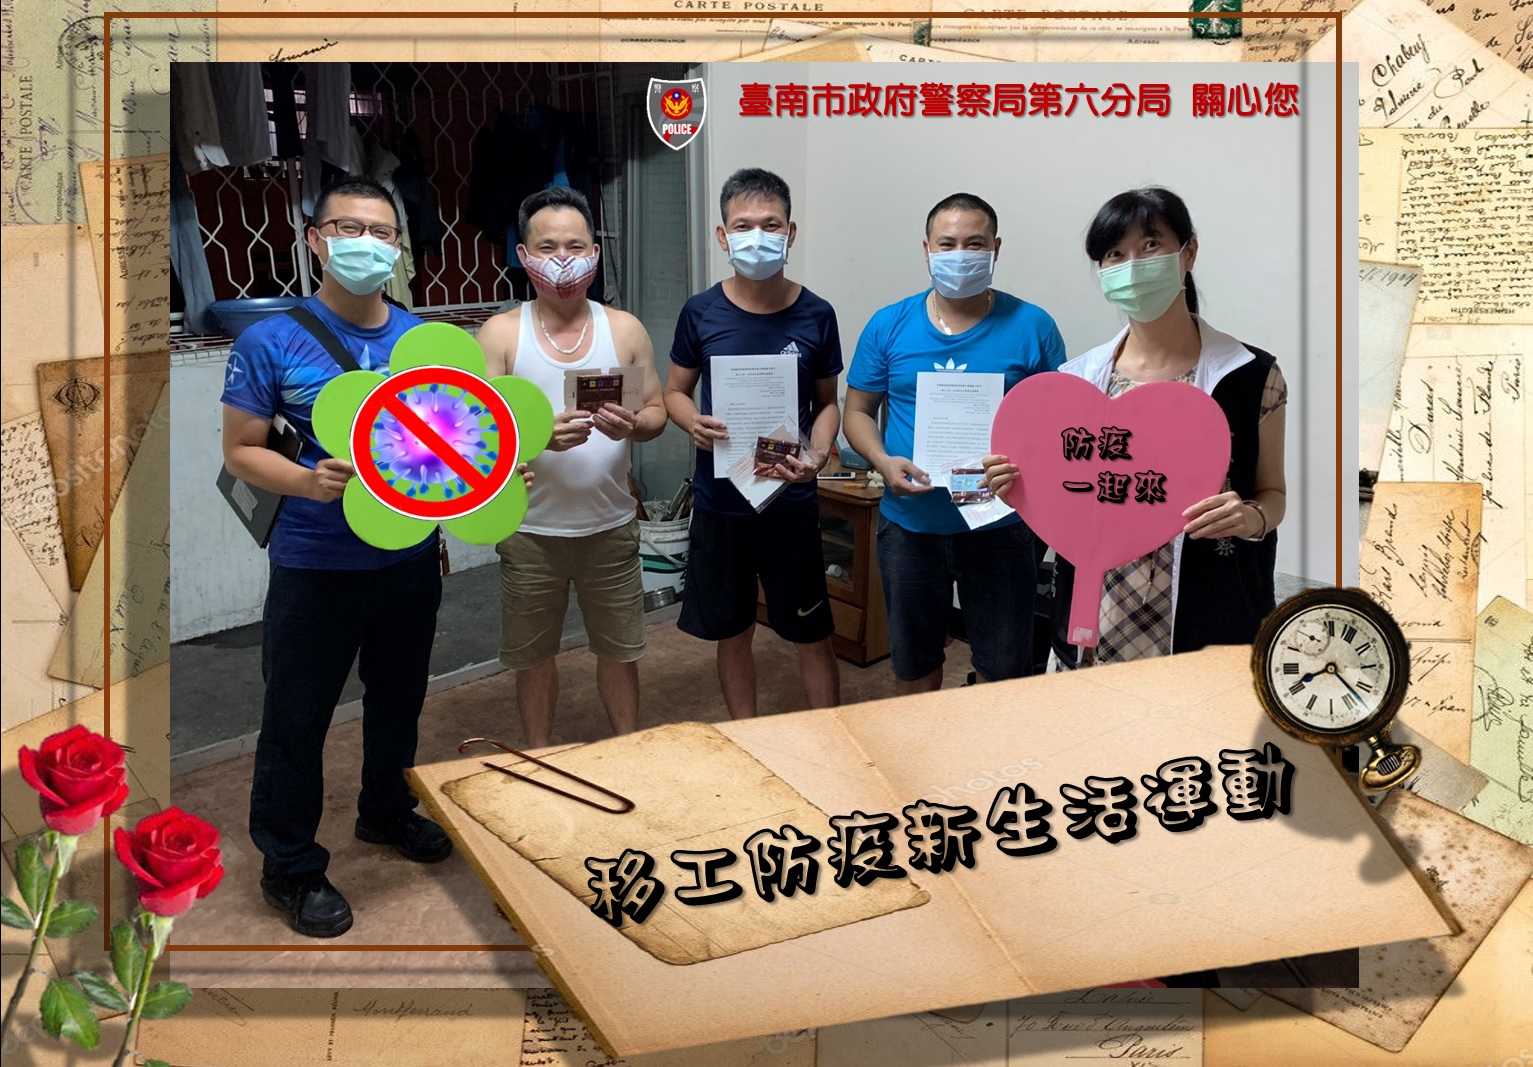 Đồn cảnh sát số 6 Tp Đài Nam kêu gọi môi giới, LĐNN cùng chung tay phòng chống dịch bệnh trong cộng đồng (ảnh: Đồn cảnh sát Tp Đài Nam